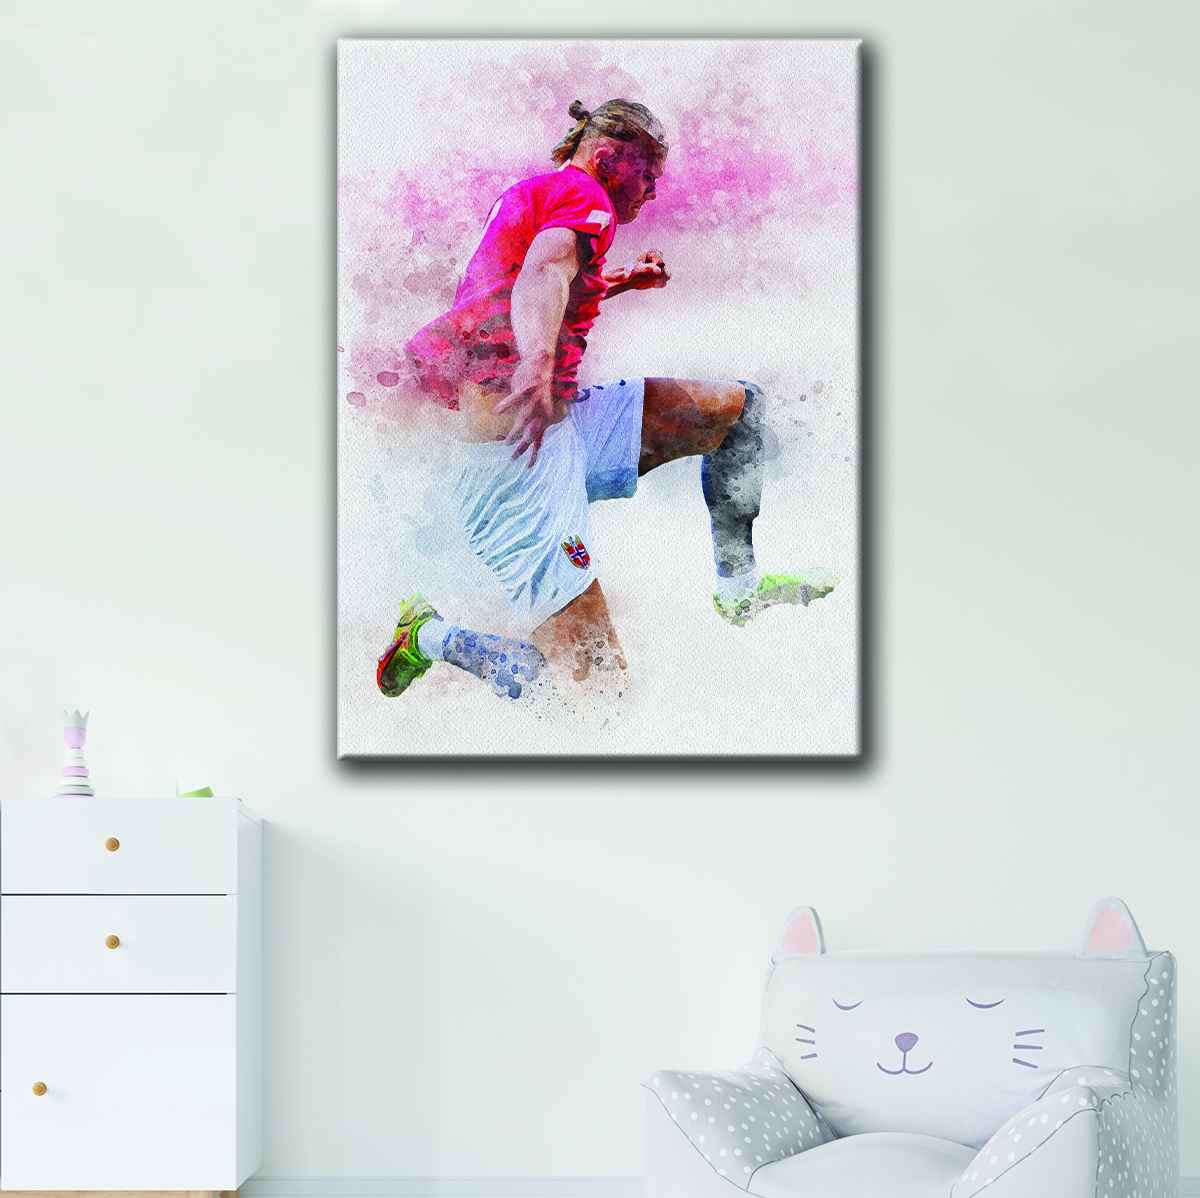 Erling Haaland Jerseys & Posters - Soccer Wearhouse